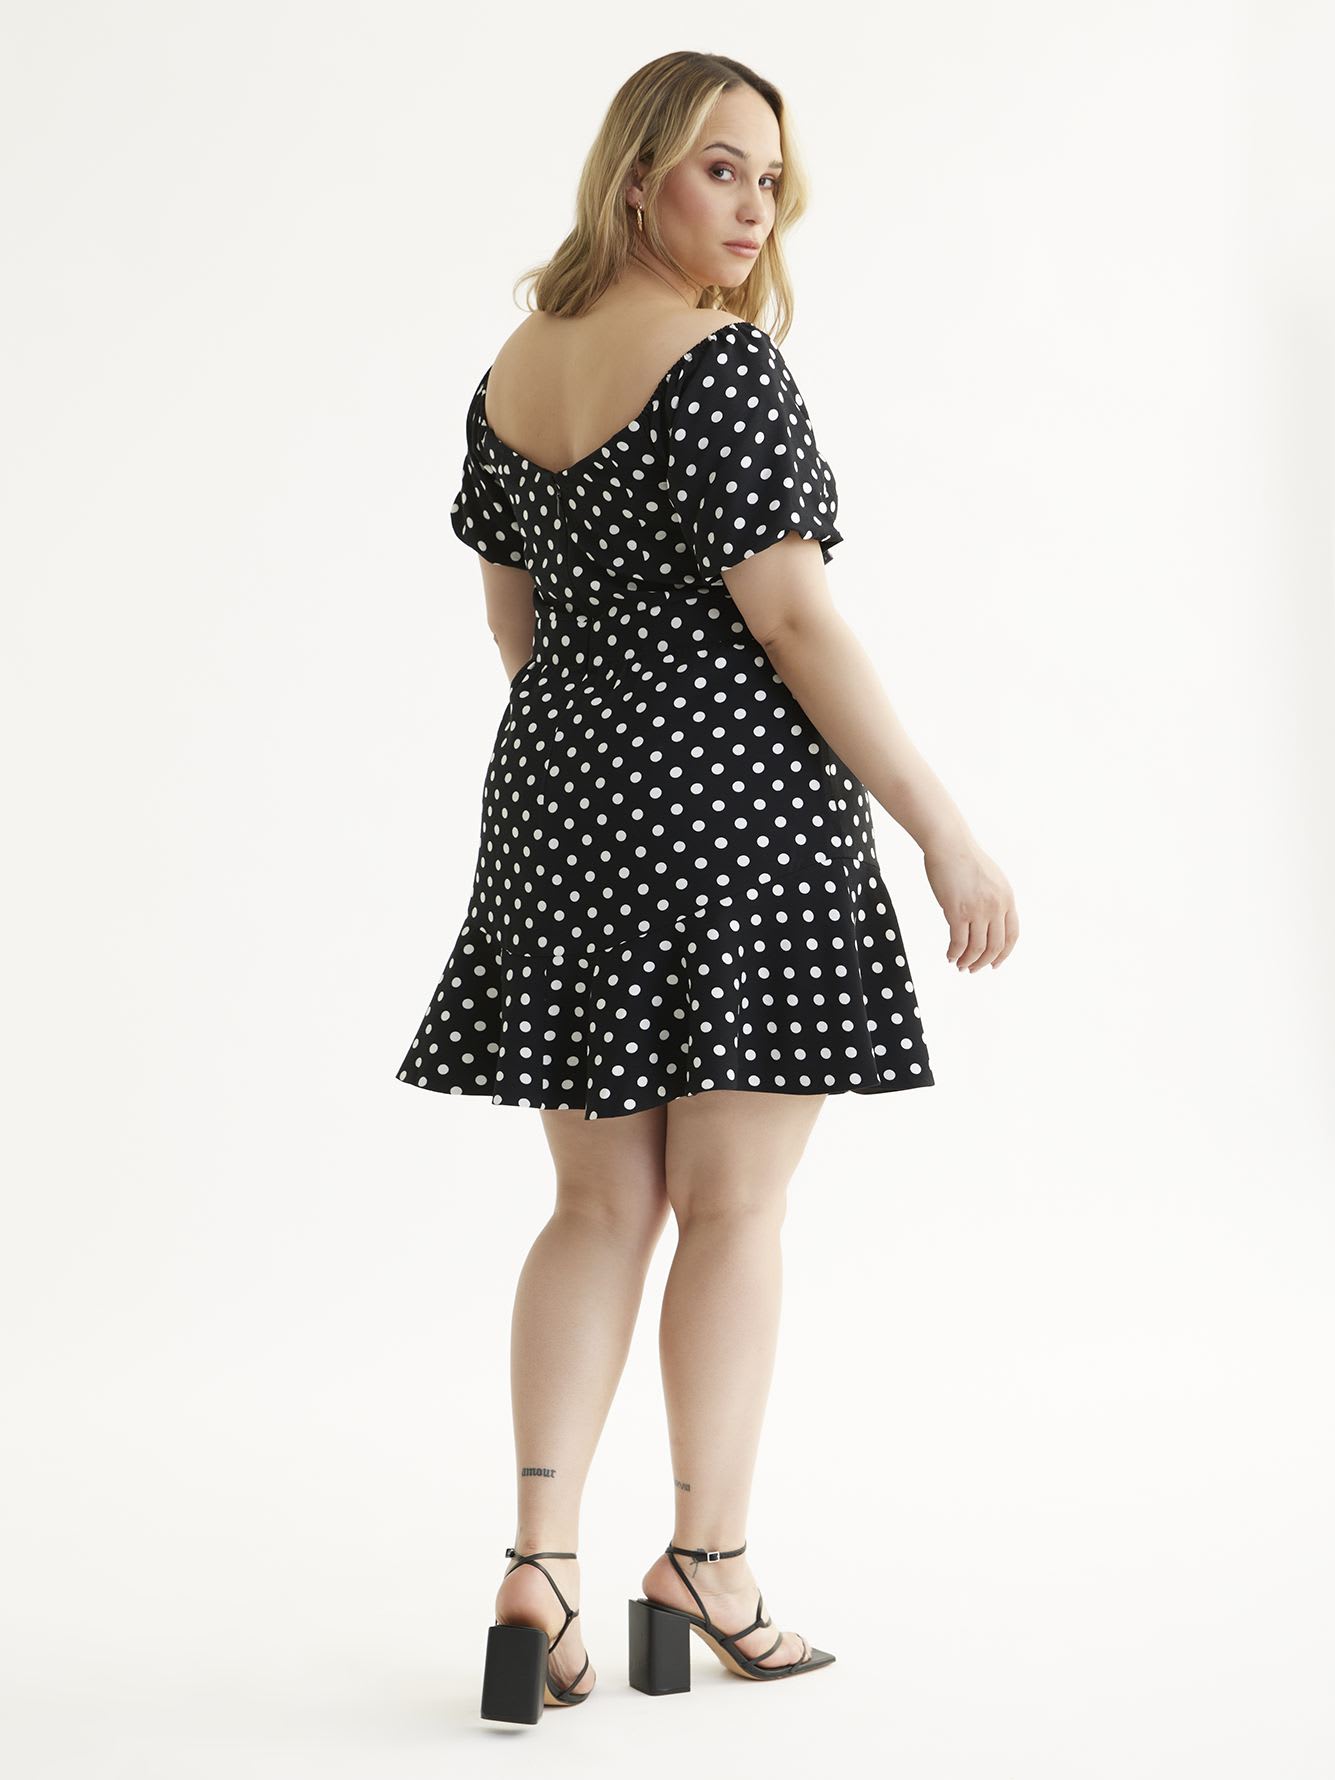 Black & White Polka Dot Print Emma Dress - City Chic